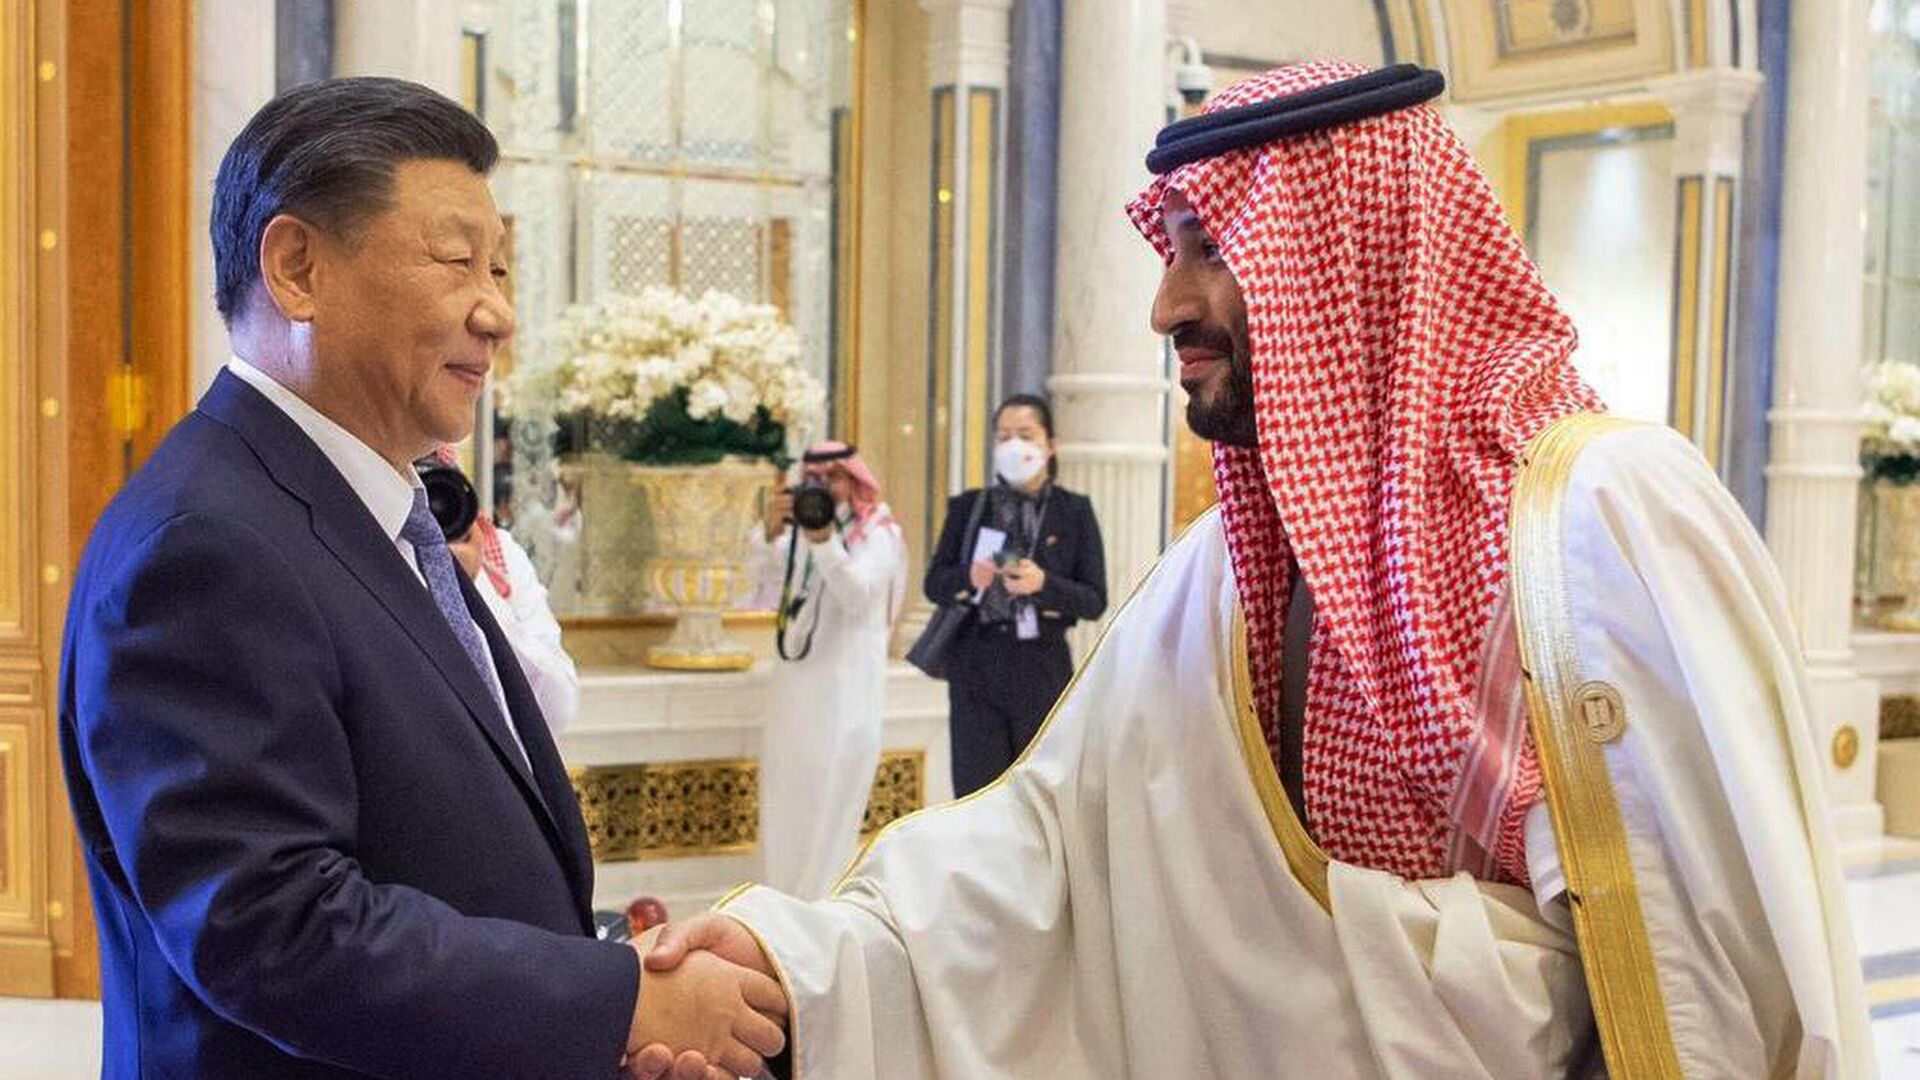 Председатель КНР Си Цзиньпин и наследный принц Саудовской Аравии Мухаммед бен Салман во время встречи в Эр-Рияде. 9 декабря 2022 года - ИноСМИ, 1920, 13.04.2023